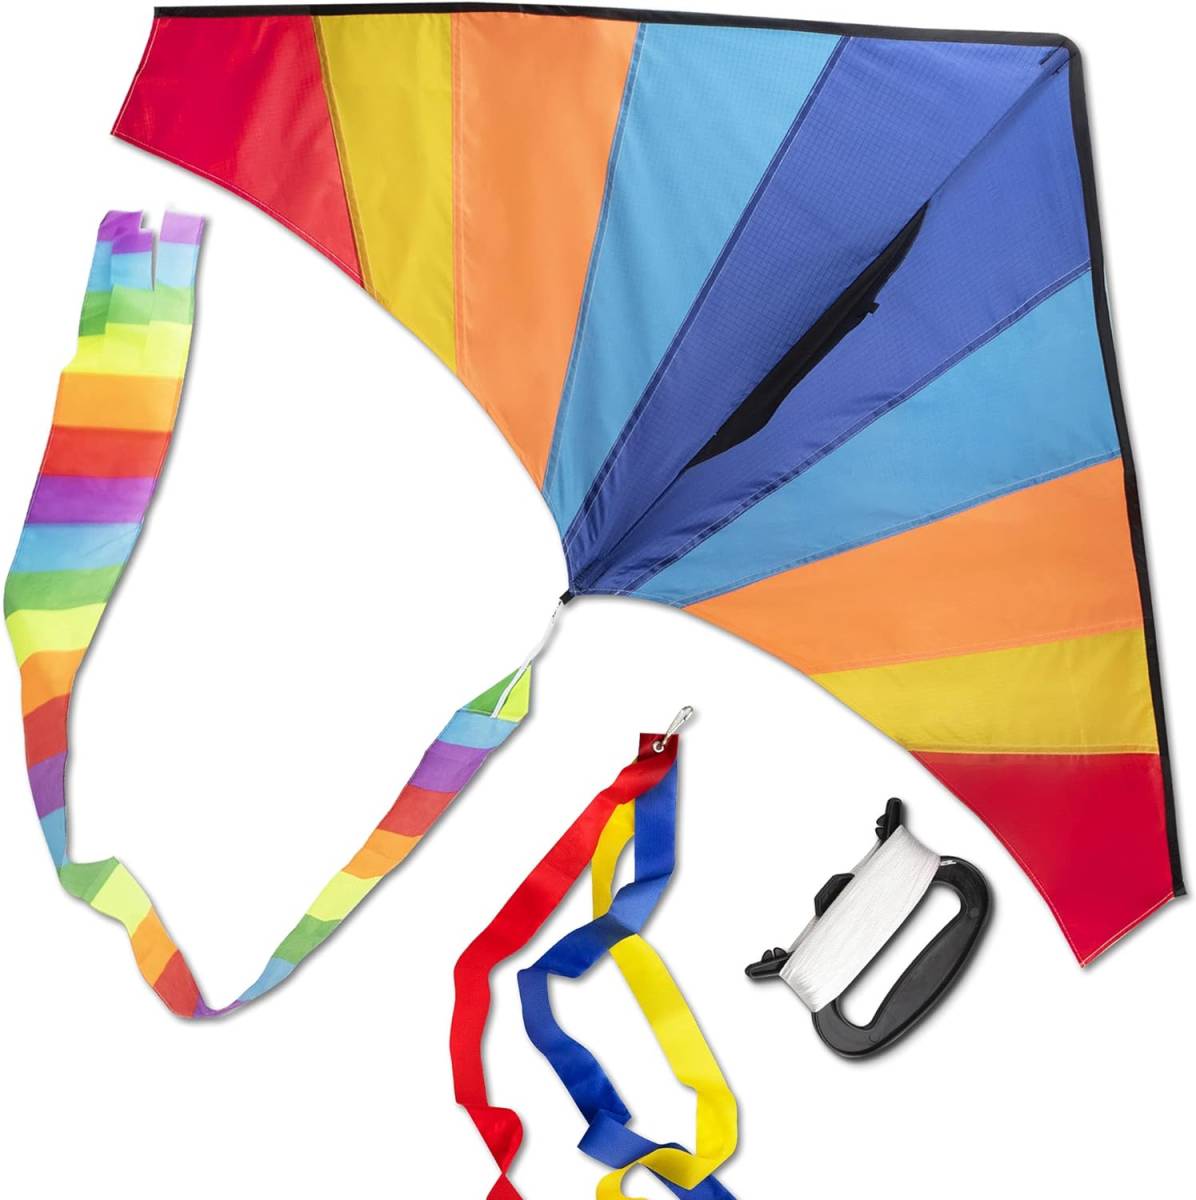 カイト-01 WISESTAR カイト 三角凧 凧揚げ 99.9m凧糸とハンドル付き 二種類の凧のしっぽ スポーツカイト カラフル_画像9